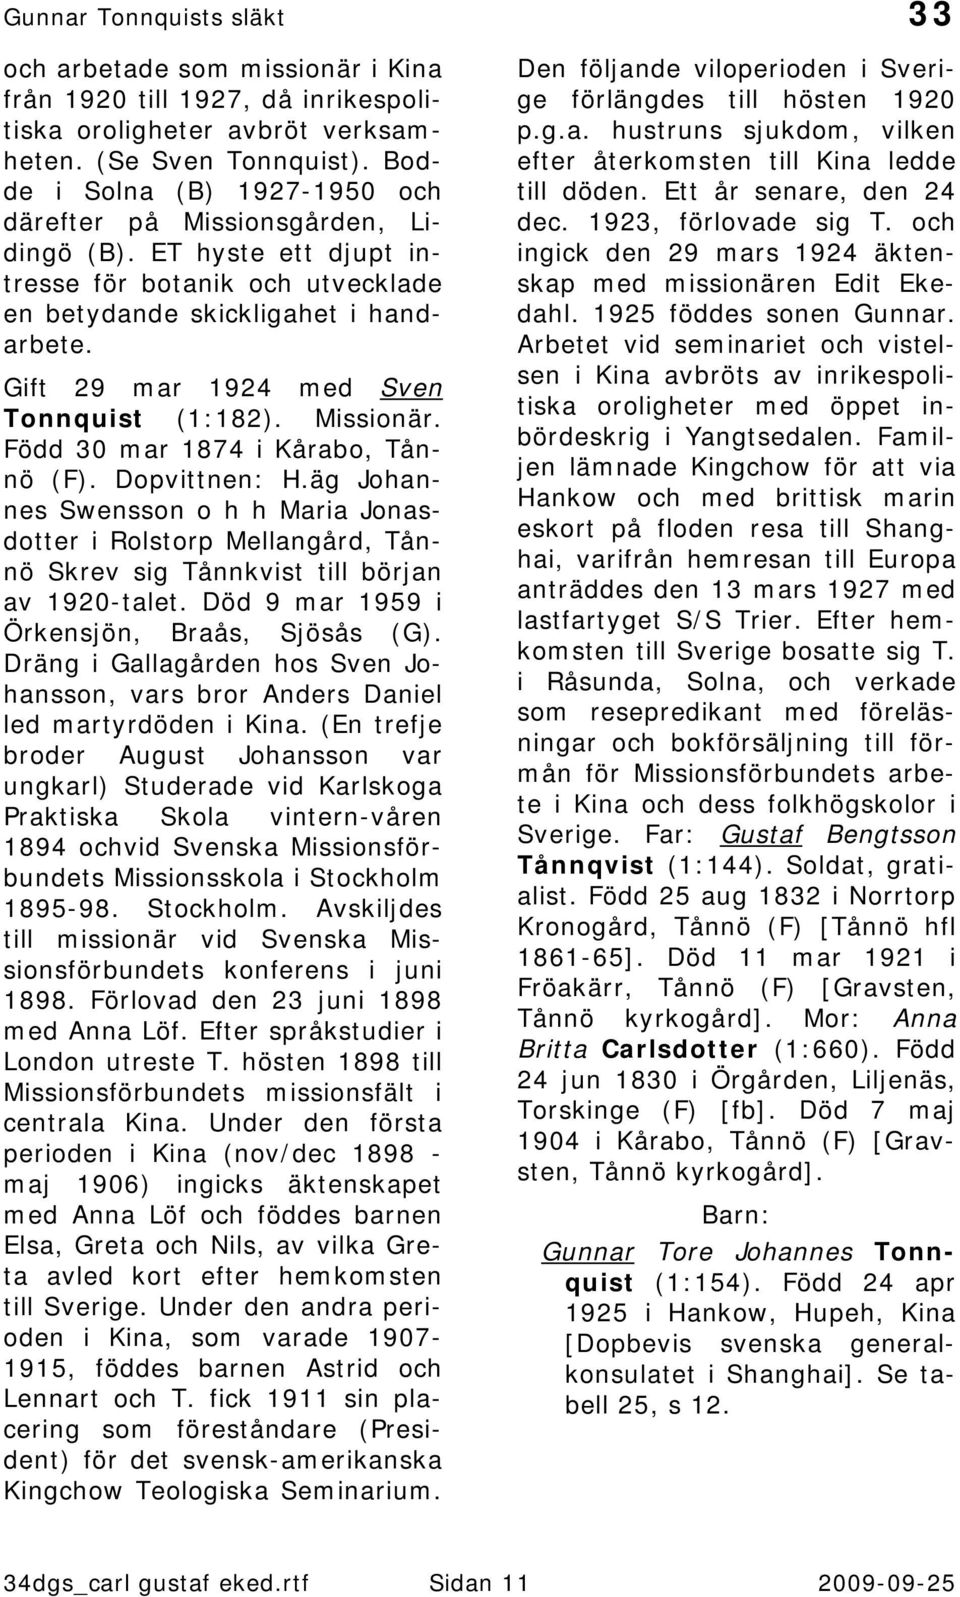 Gift 29 mar 1924 med Sven Tonnquist (1:182). Missionär. Född 30 mar 1874 i Kårabo, Tånnö (F). Dopvittnen: H.